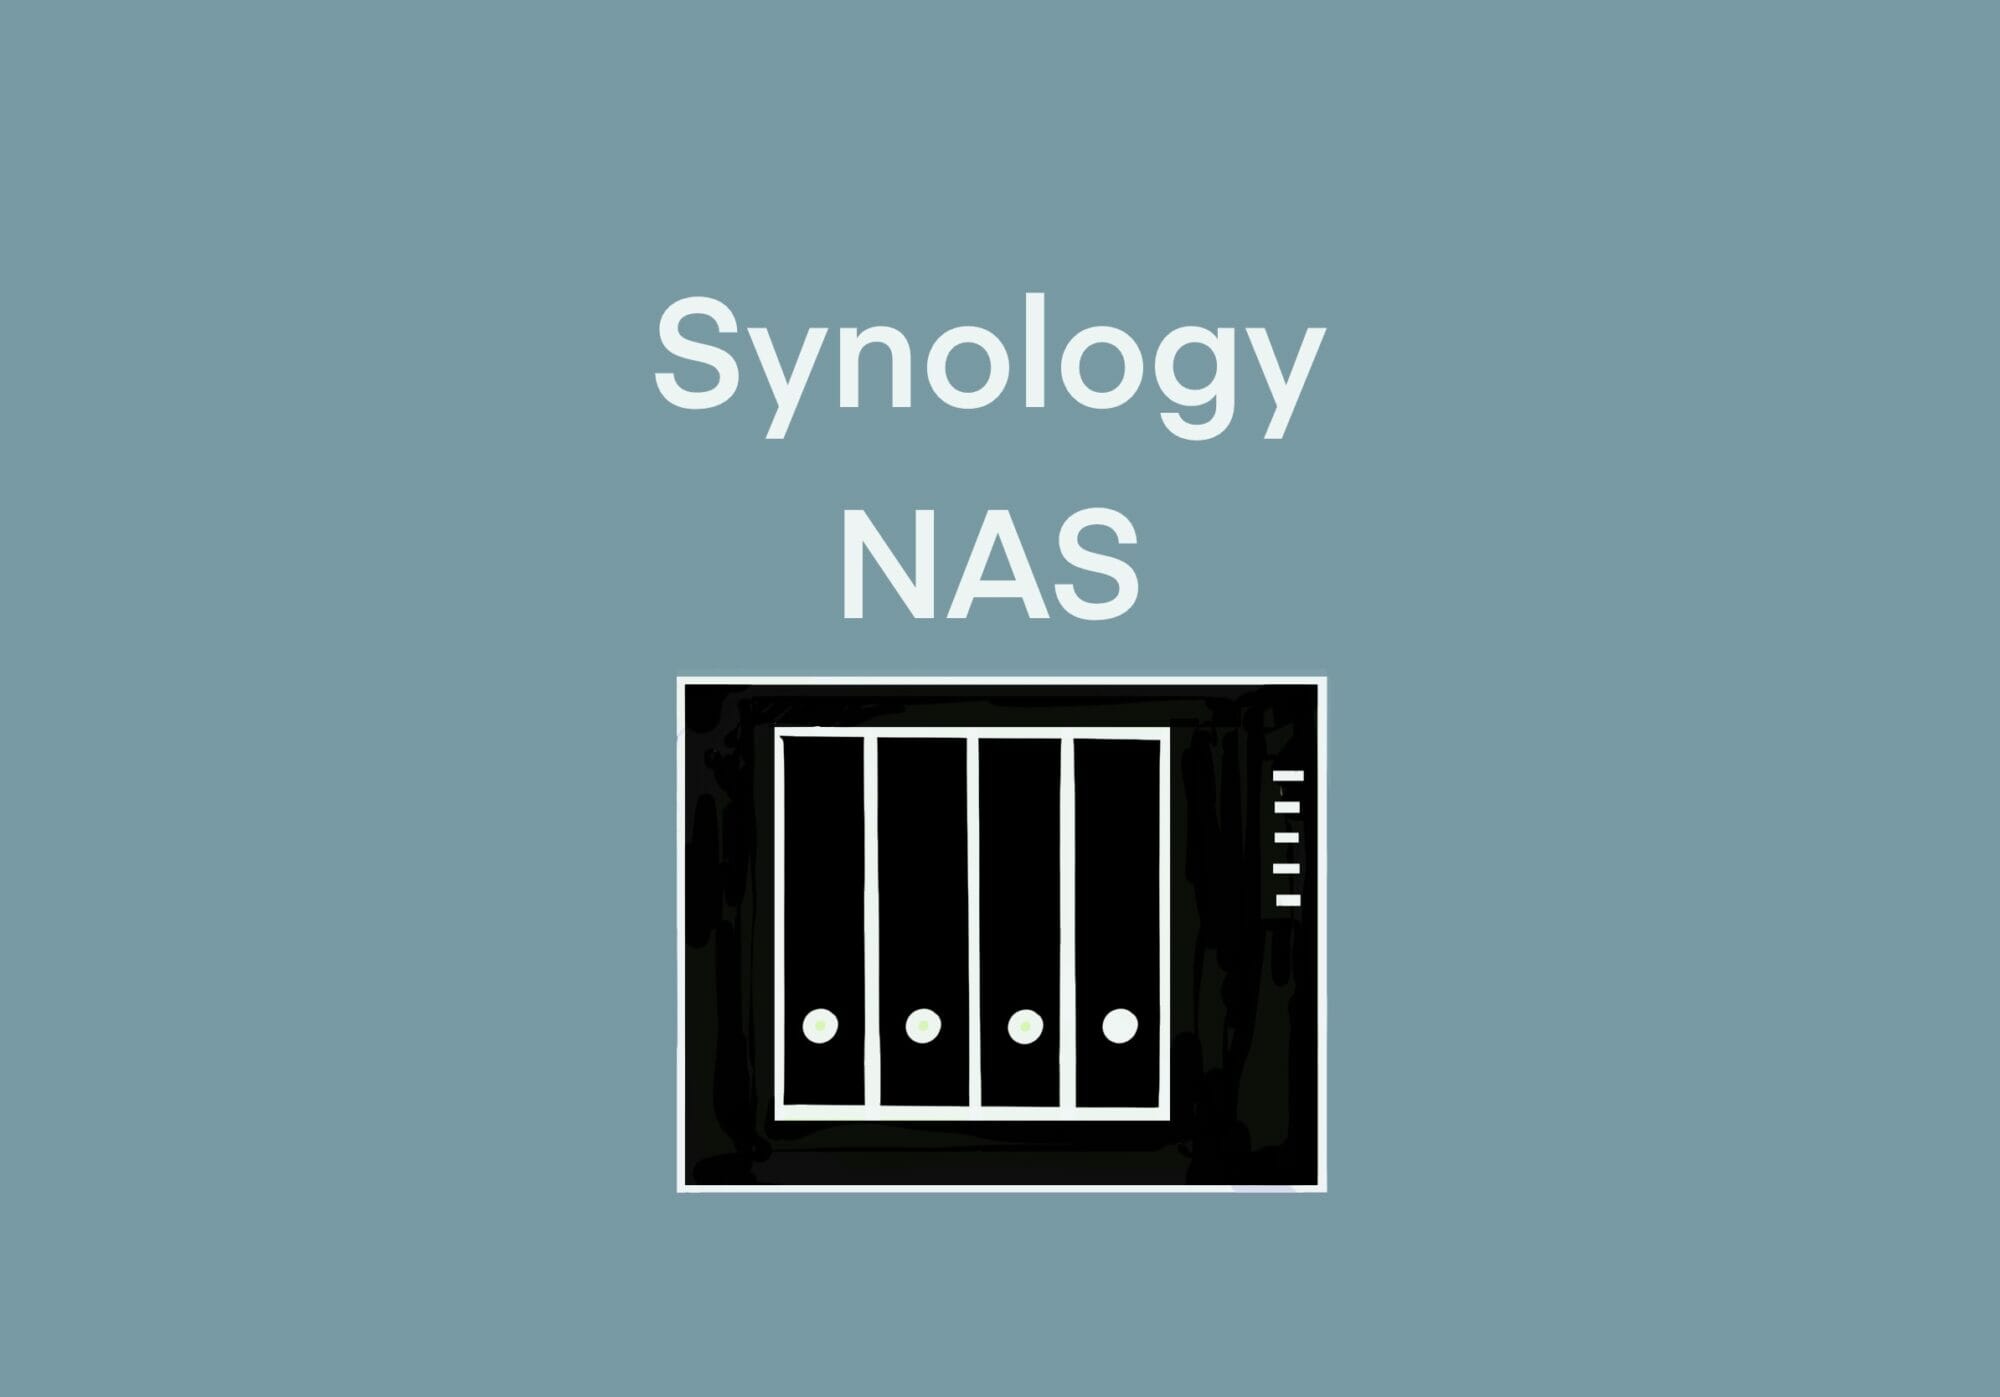 [FAQ] Synology NASの共有フォルダに端末でアクセスする[2021/12/29] ID36097